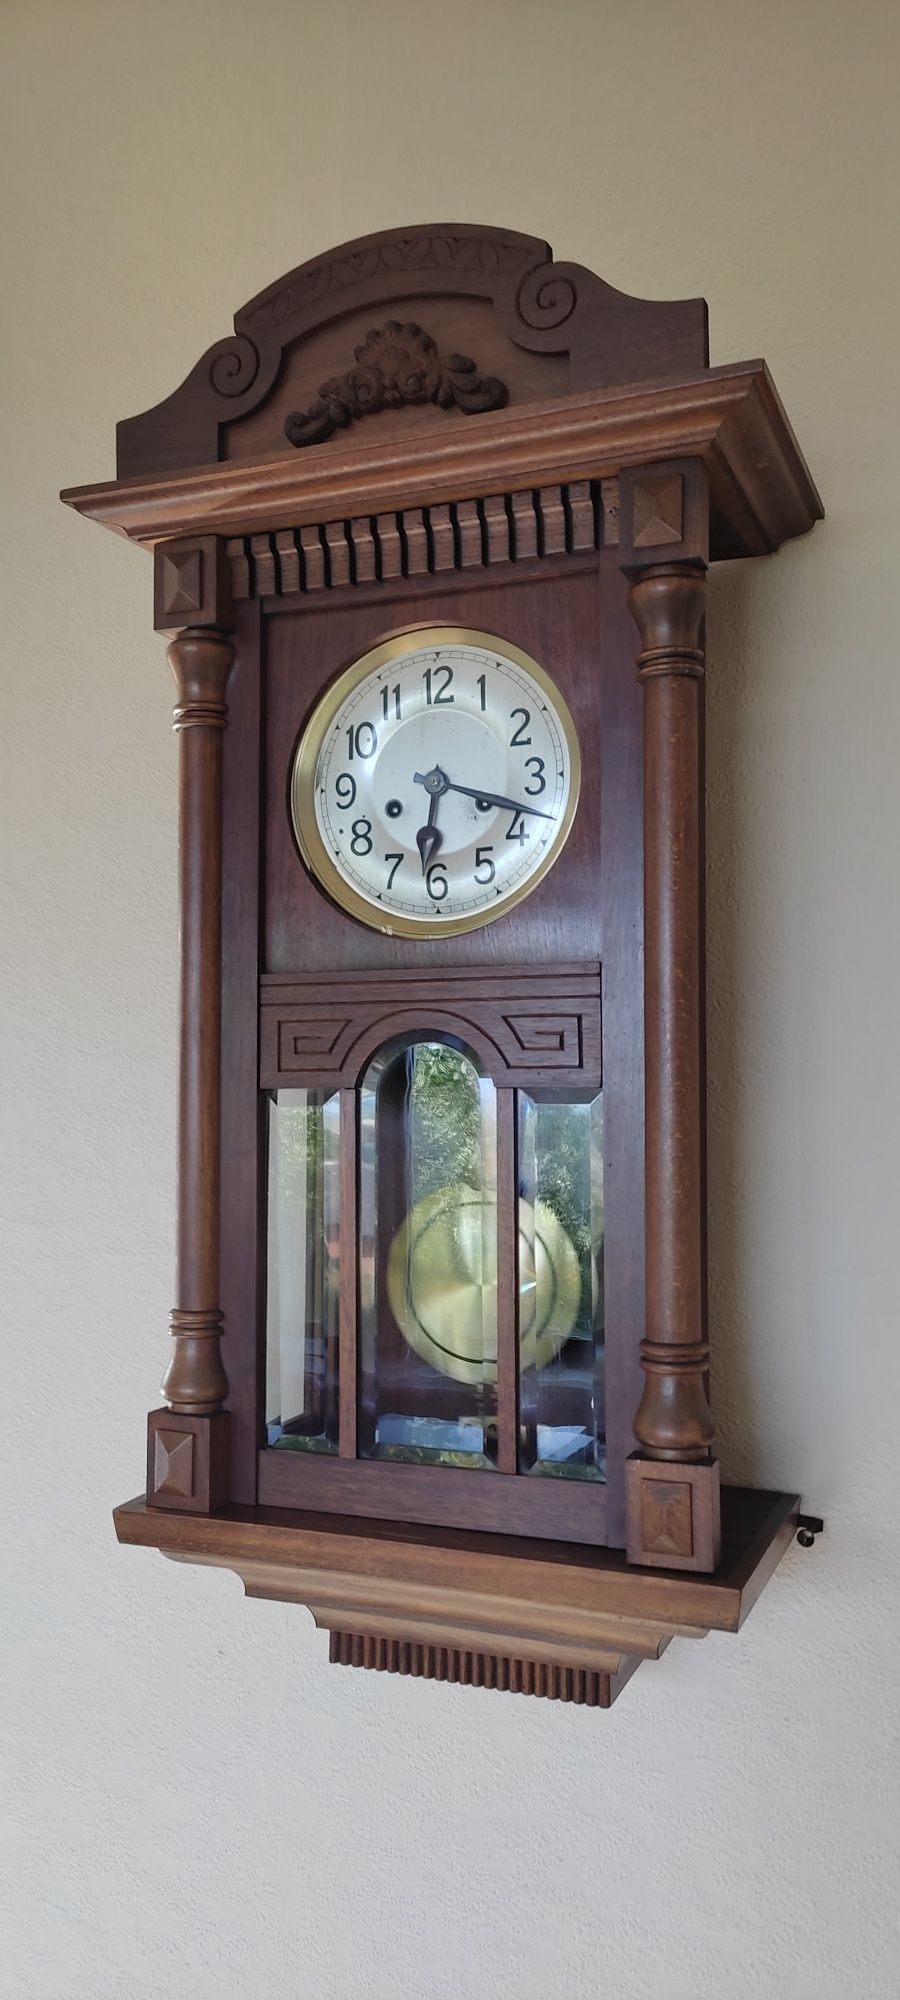 Zegar gabinetowy HAU w 100% oryginalnym stanie, jak ze sklepu, 98 lat